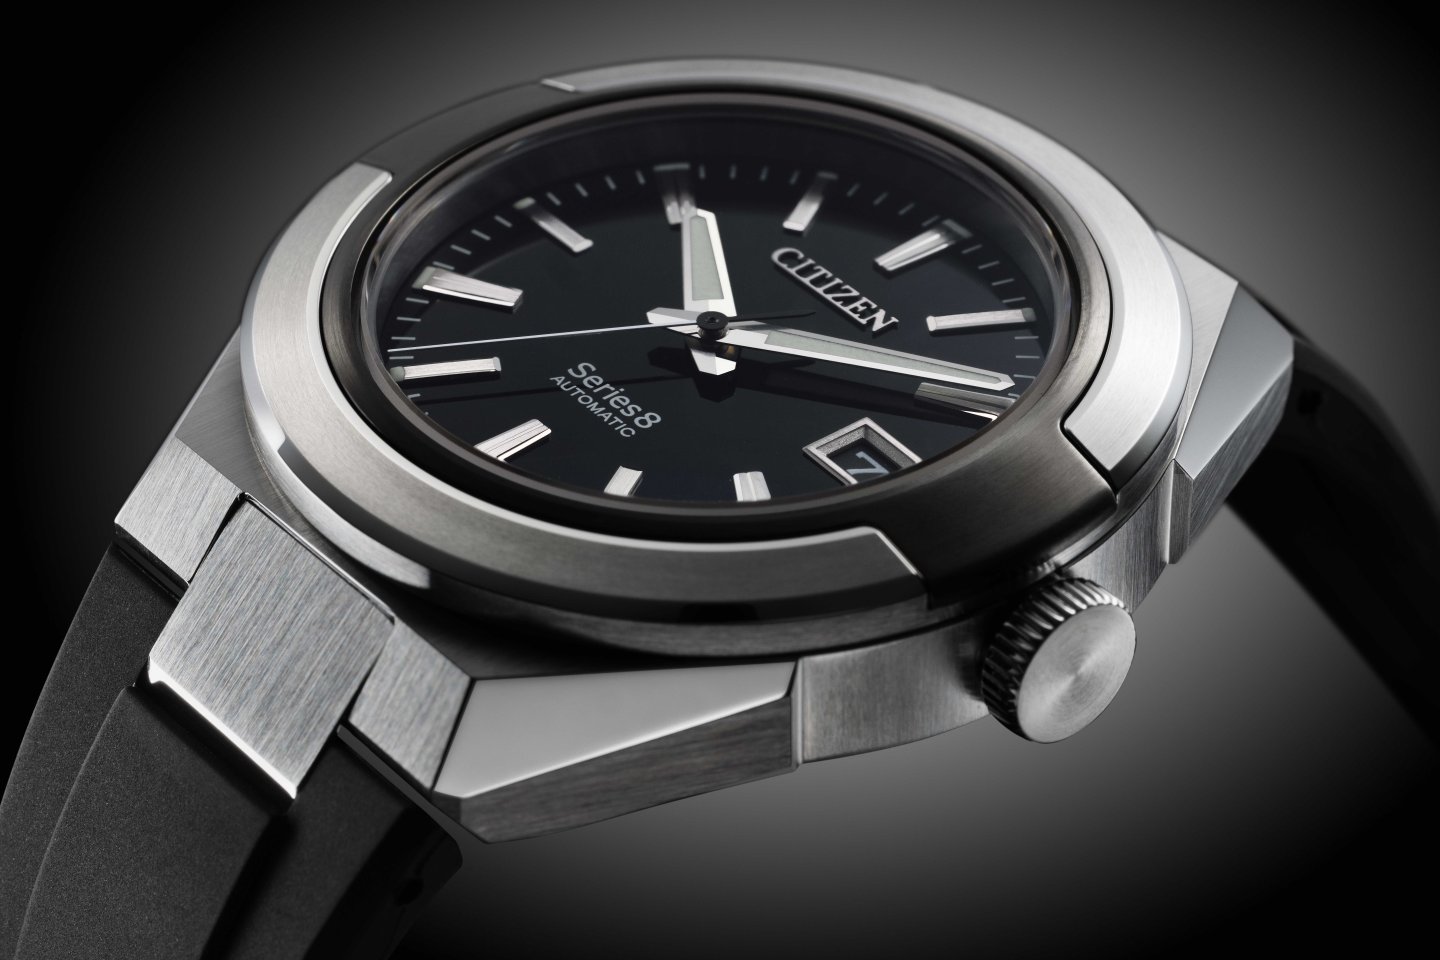 『シチズン シリーズエイト』870 Mechanical からウレタンバンドモデルが登場～モダン・スポーティデザインの機械式時計ブランド